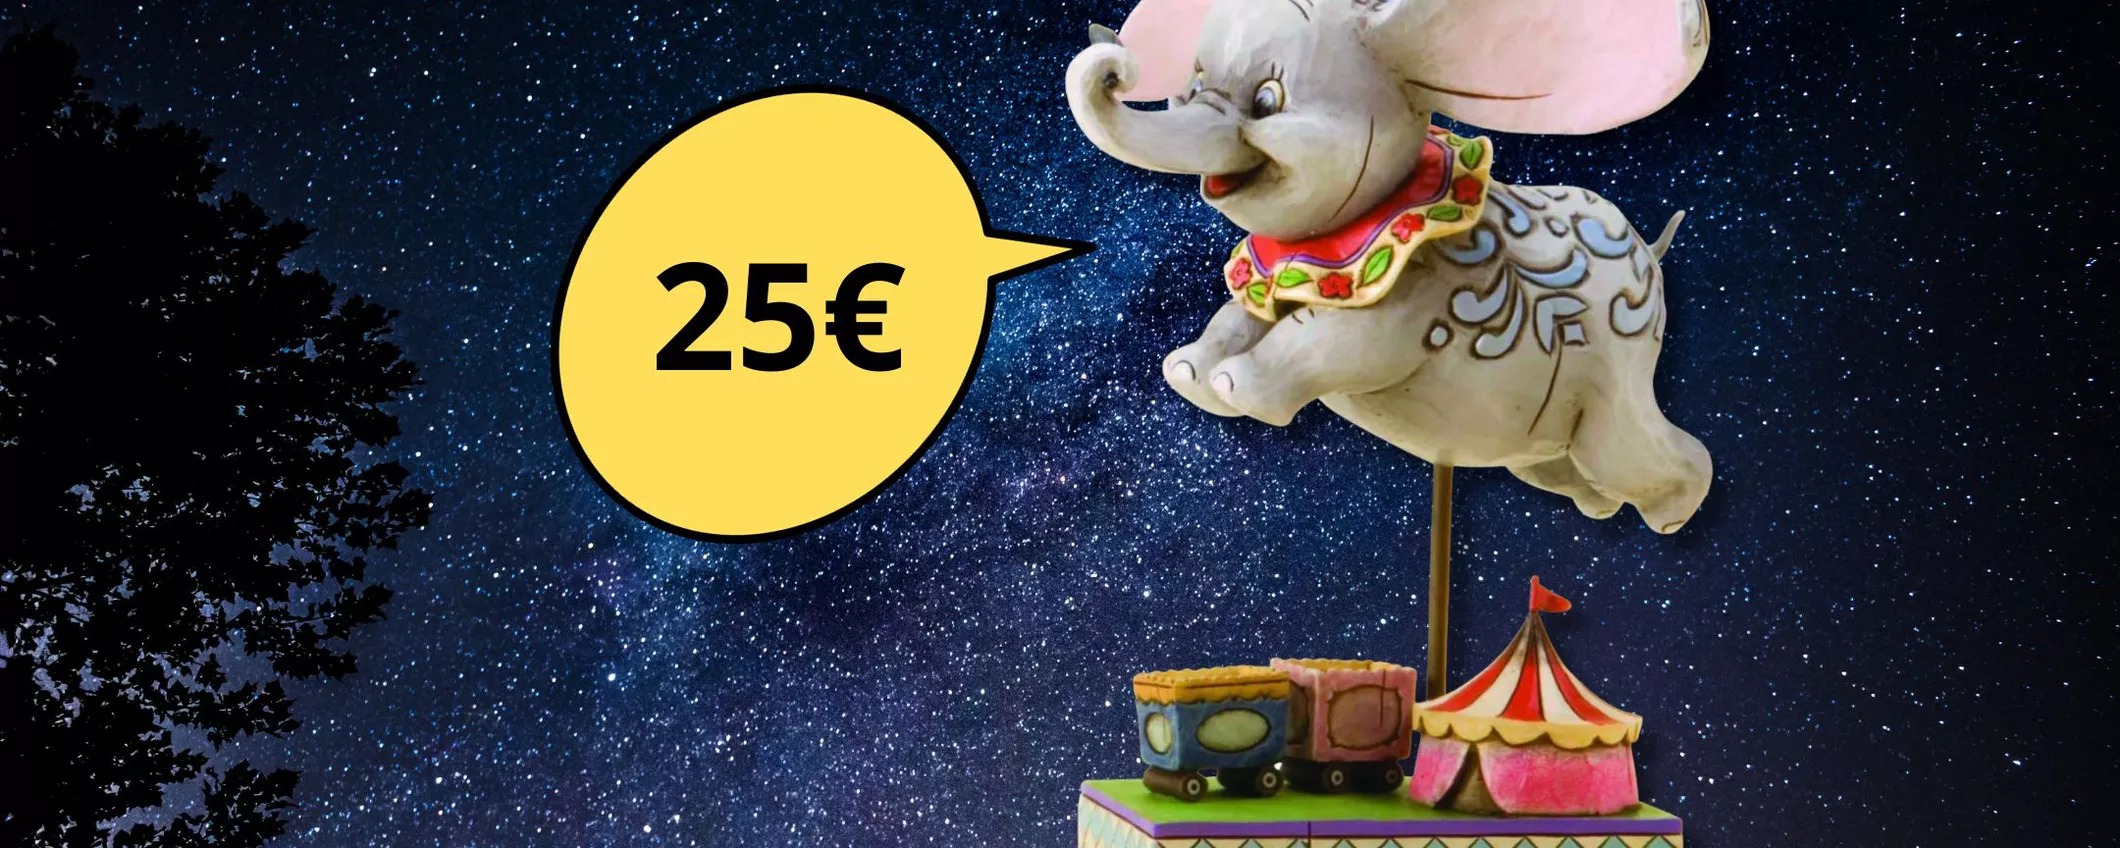 Splendida statuina Dumbo della Disney Tradition a soli 25 euro: un pezzo imperdibile!